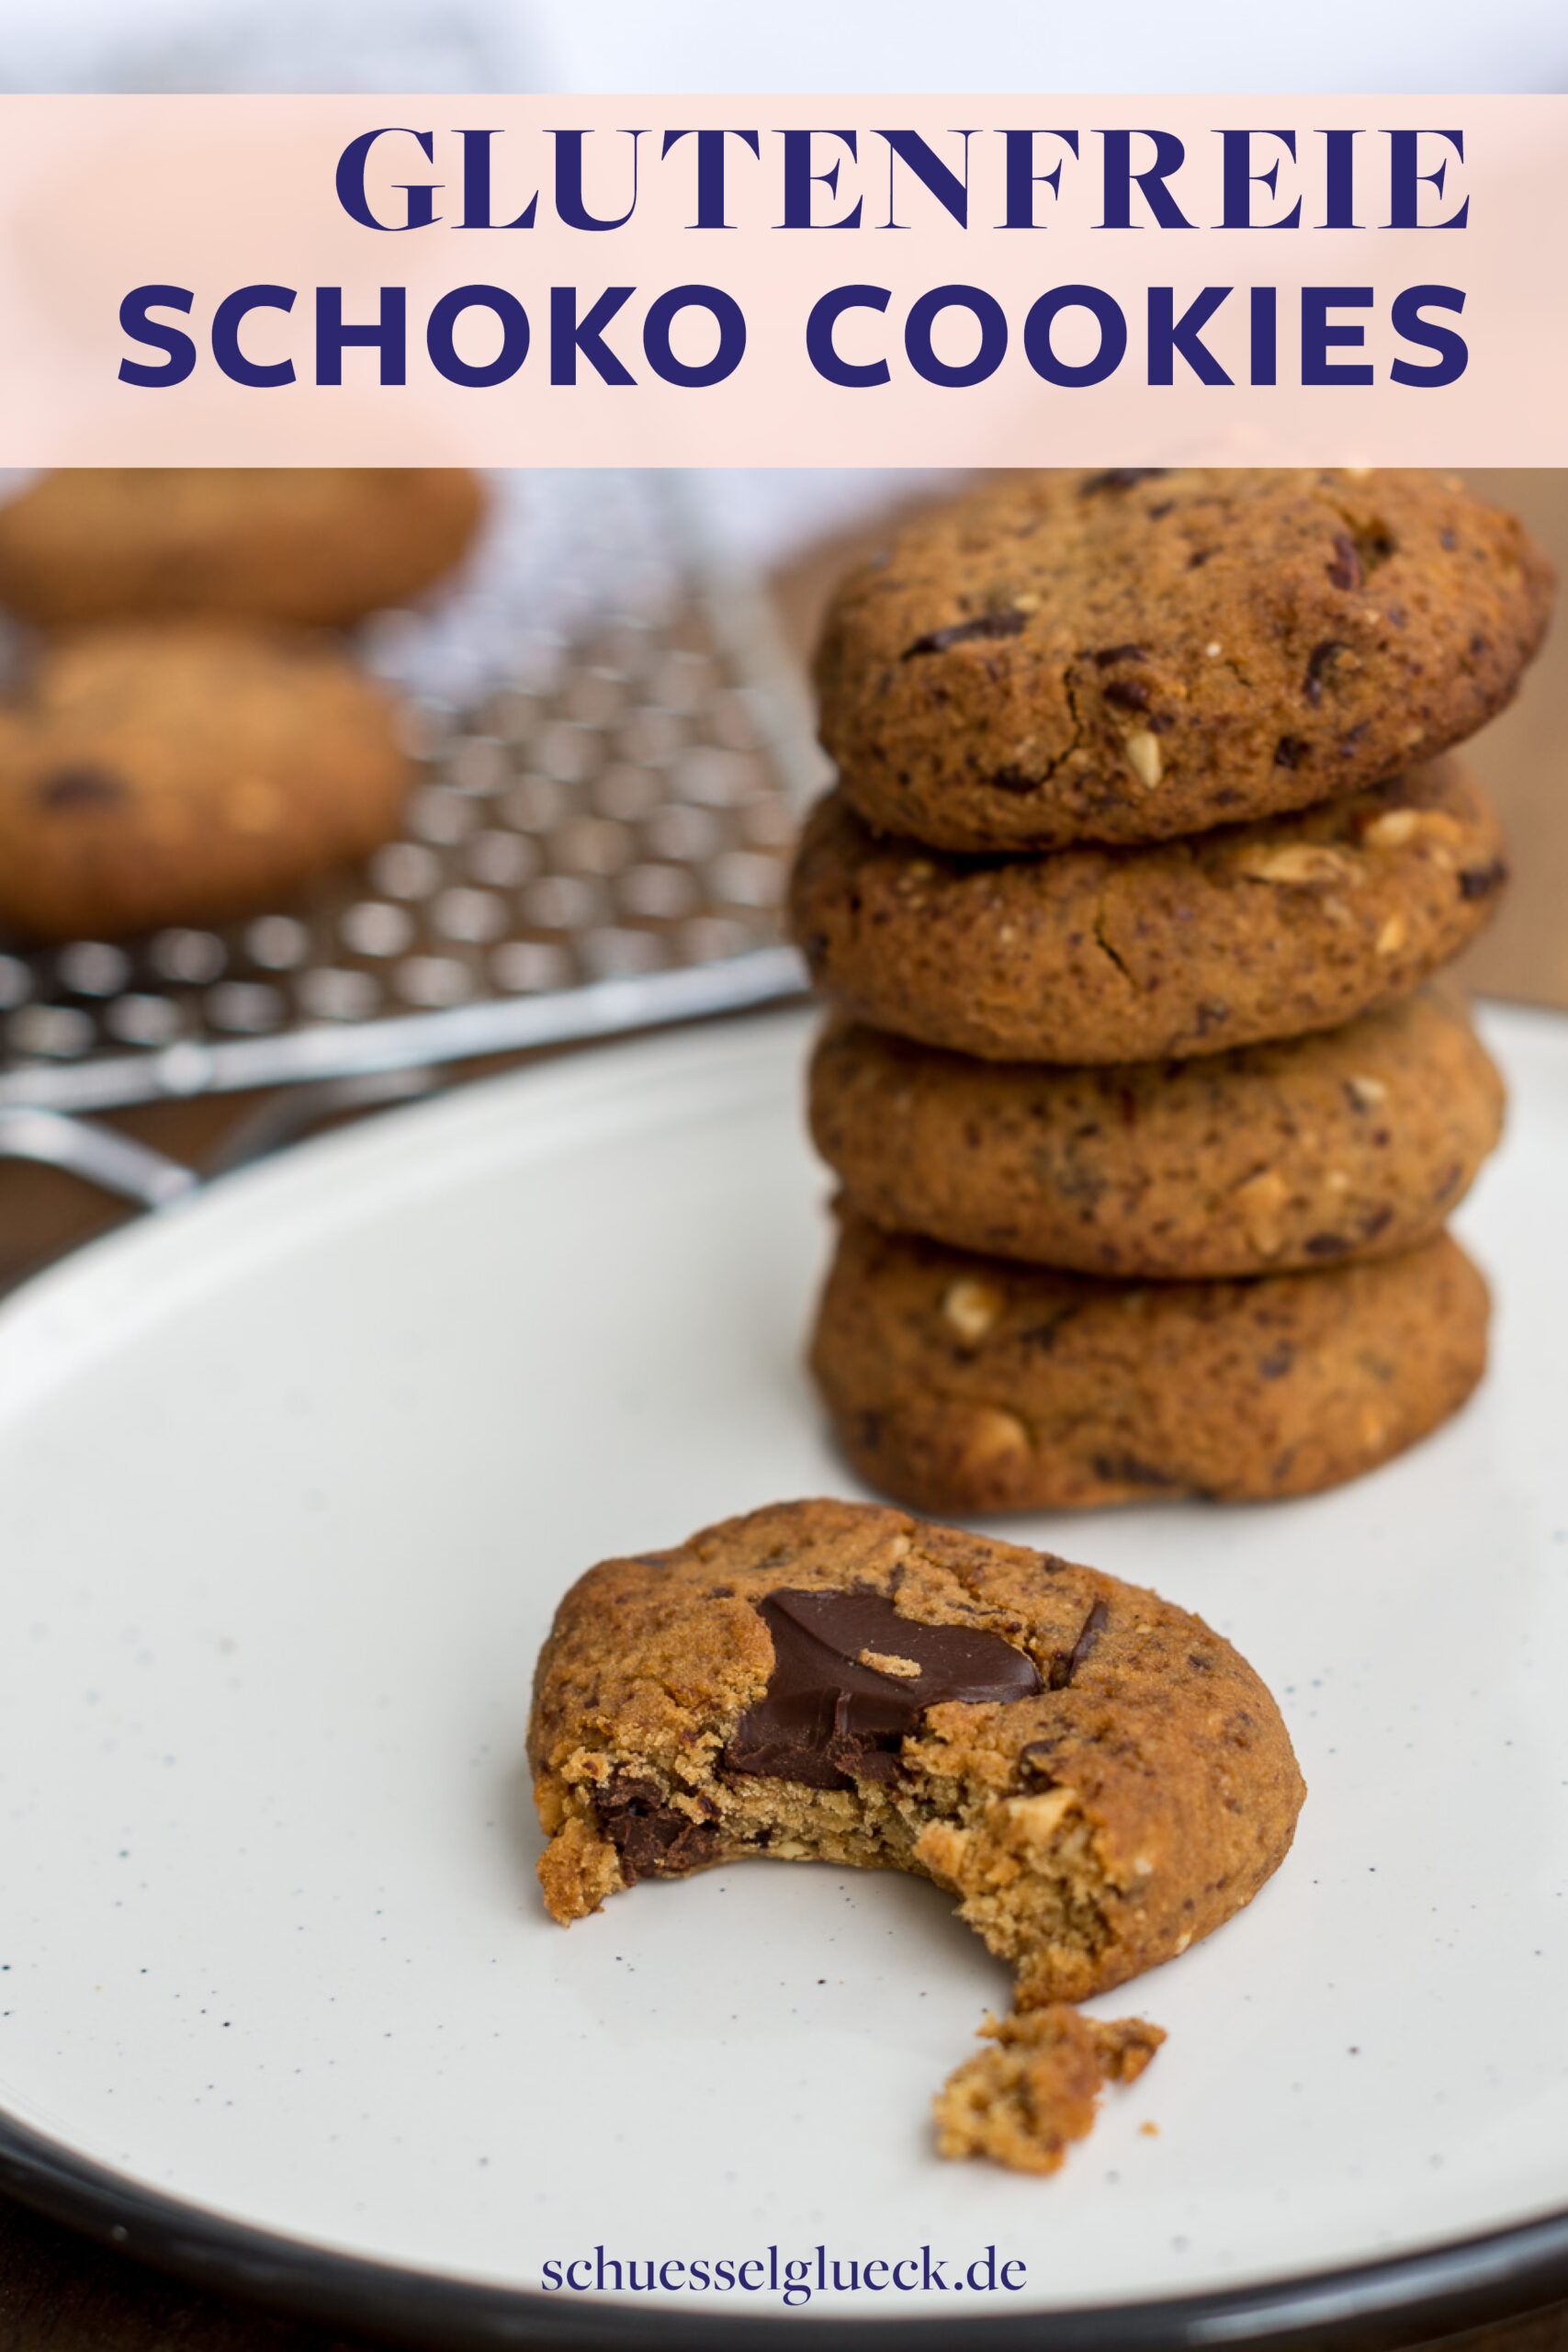 Die besten gesunden Chocolate Chip Cookies ever – meine absoluten Wohlfühlkekse